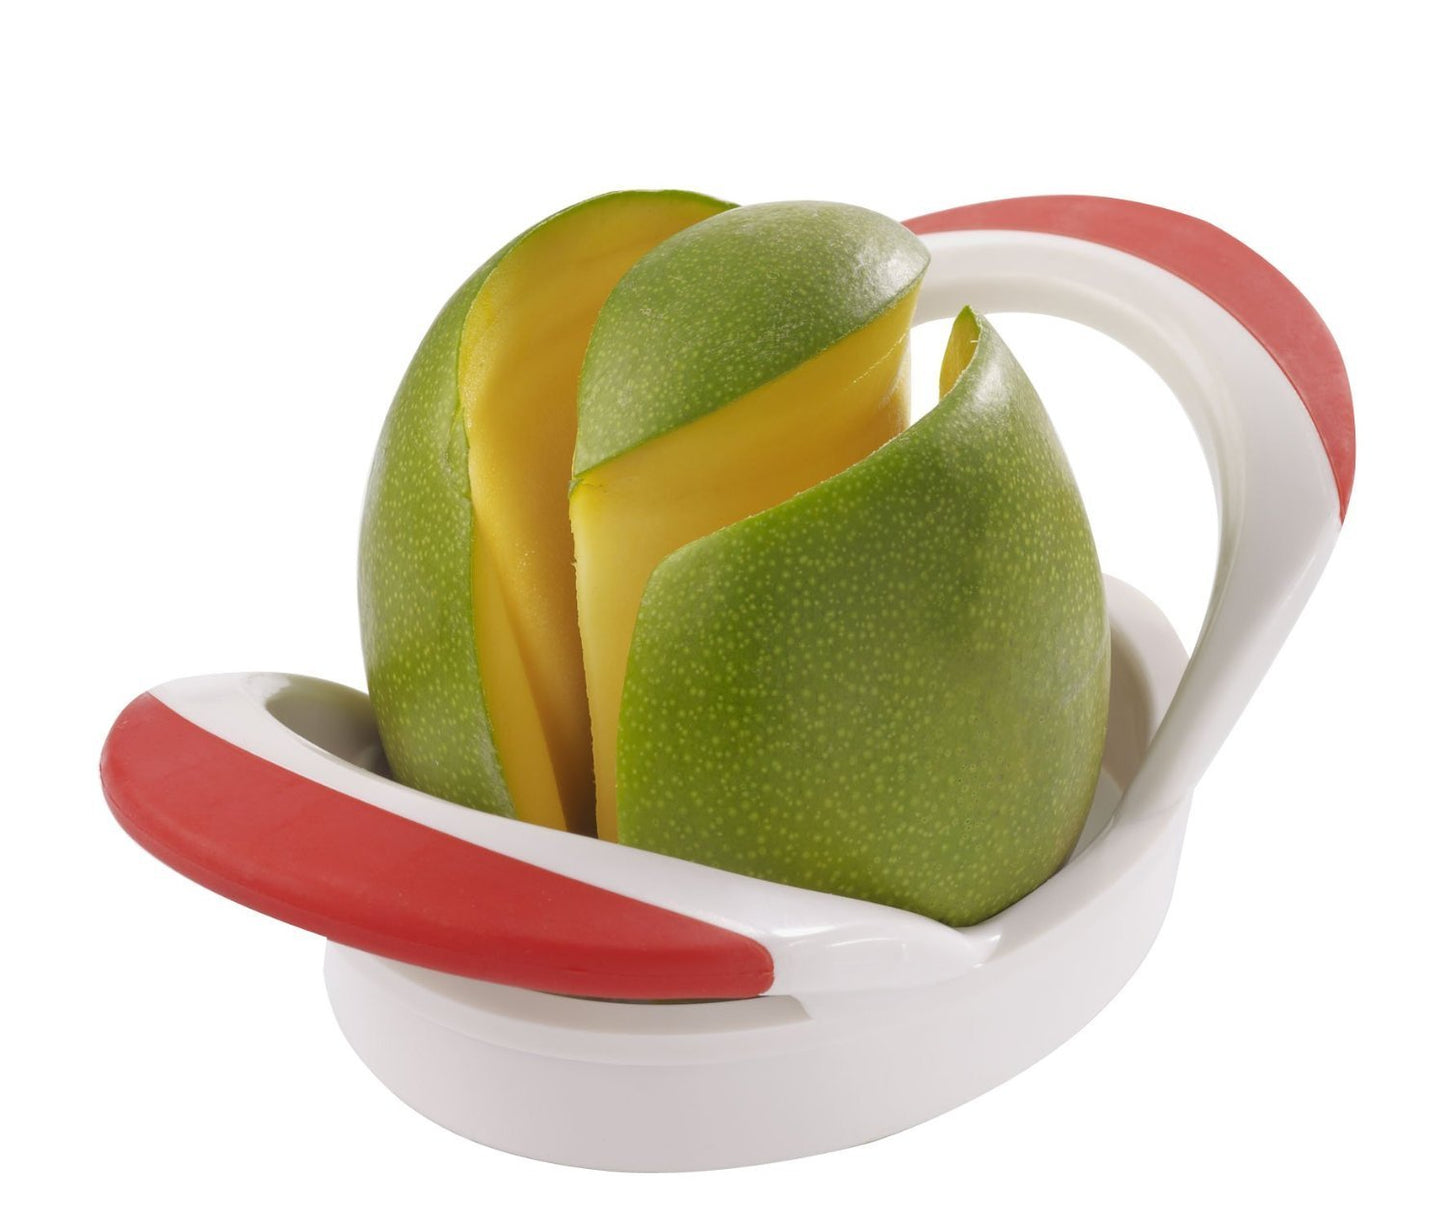 Mango slicer